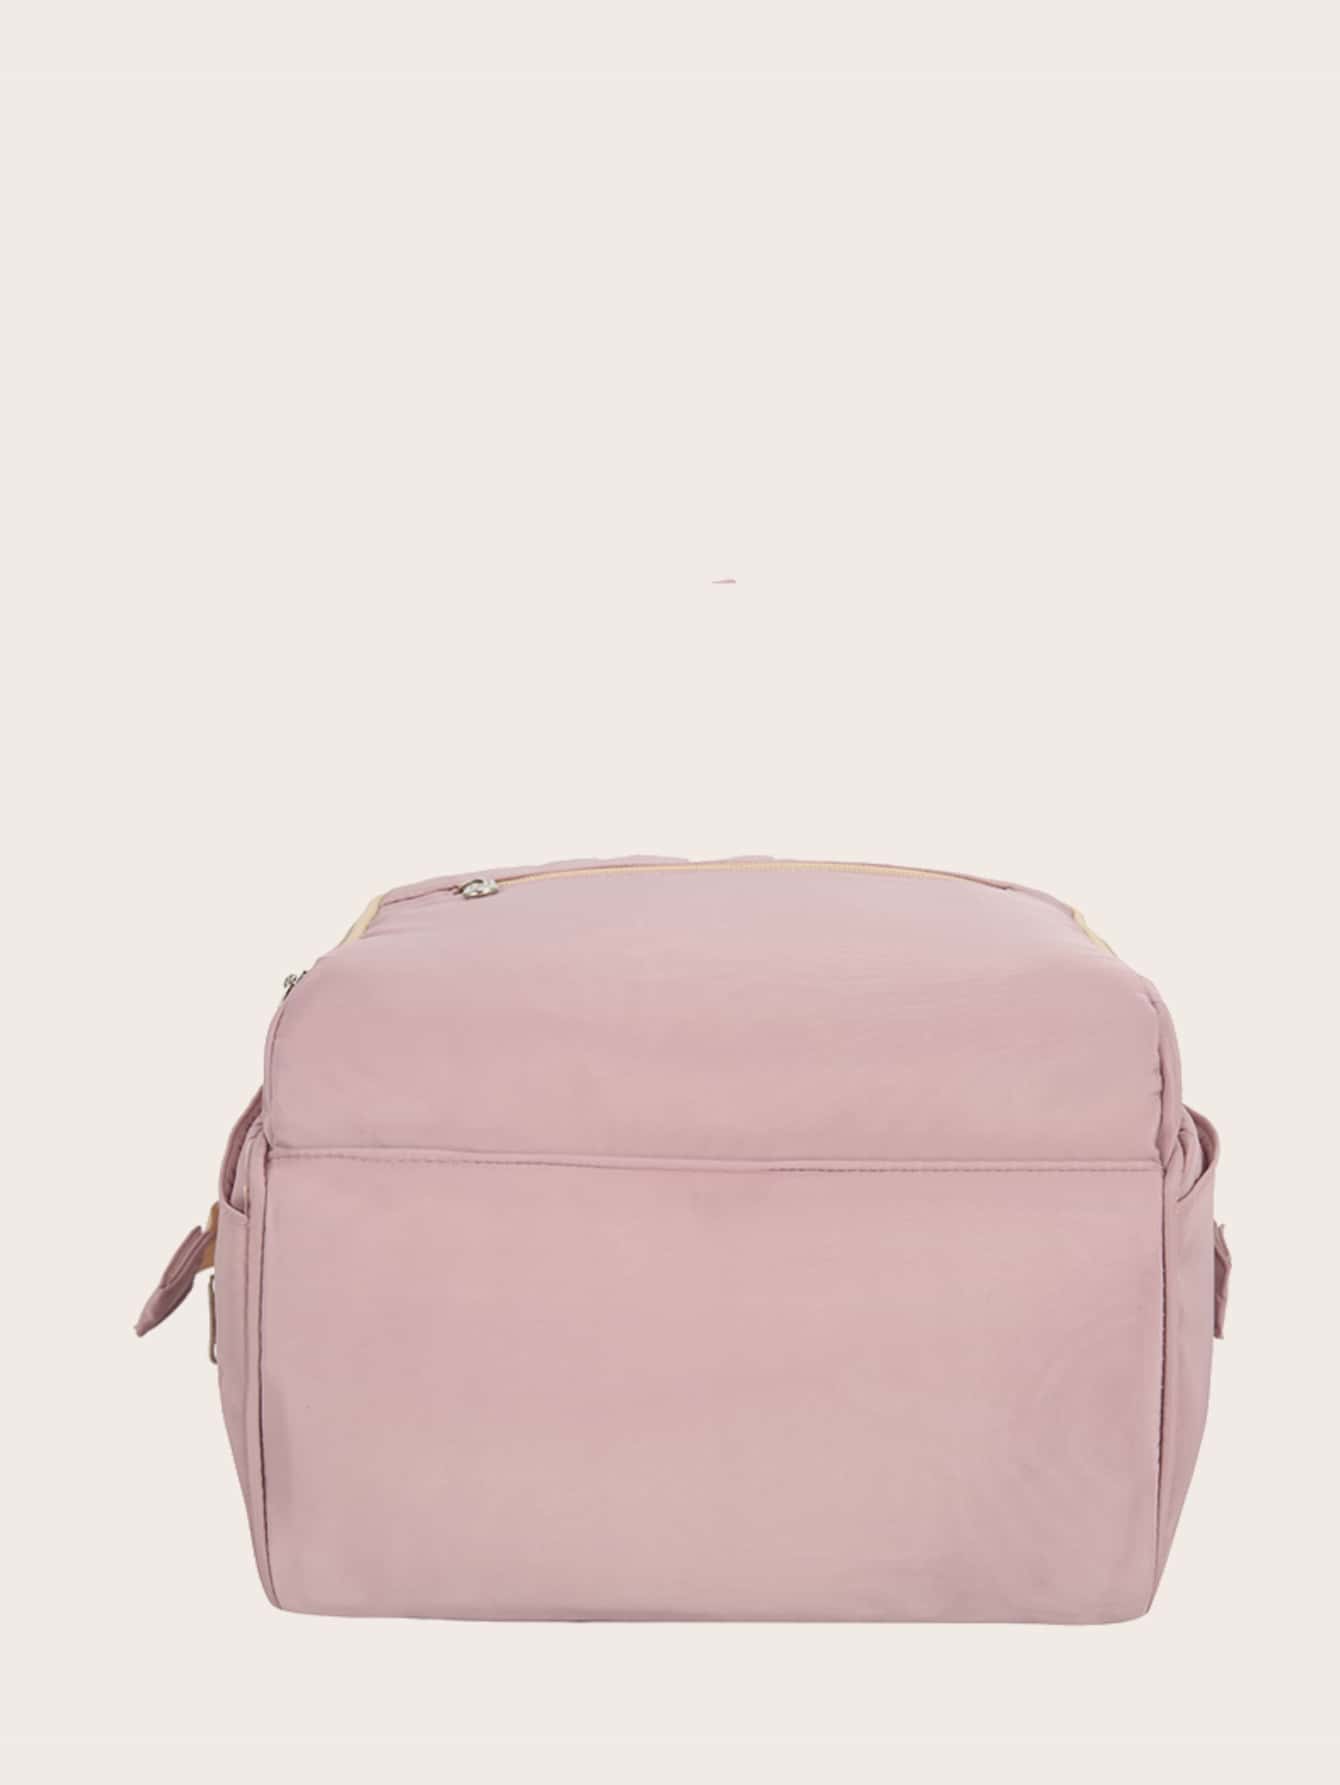 Large Capacity Nylon Backpack